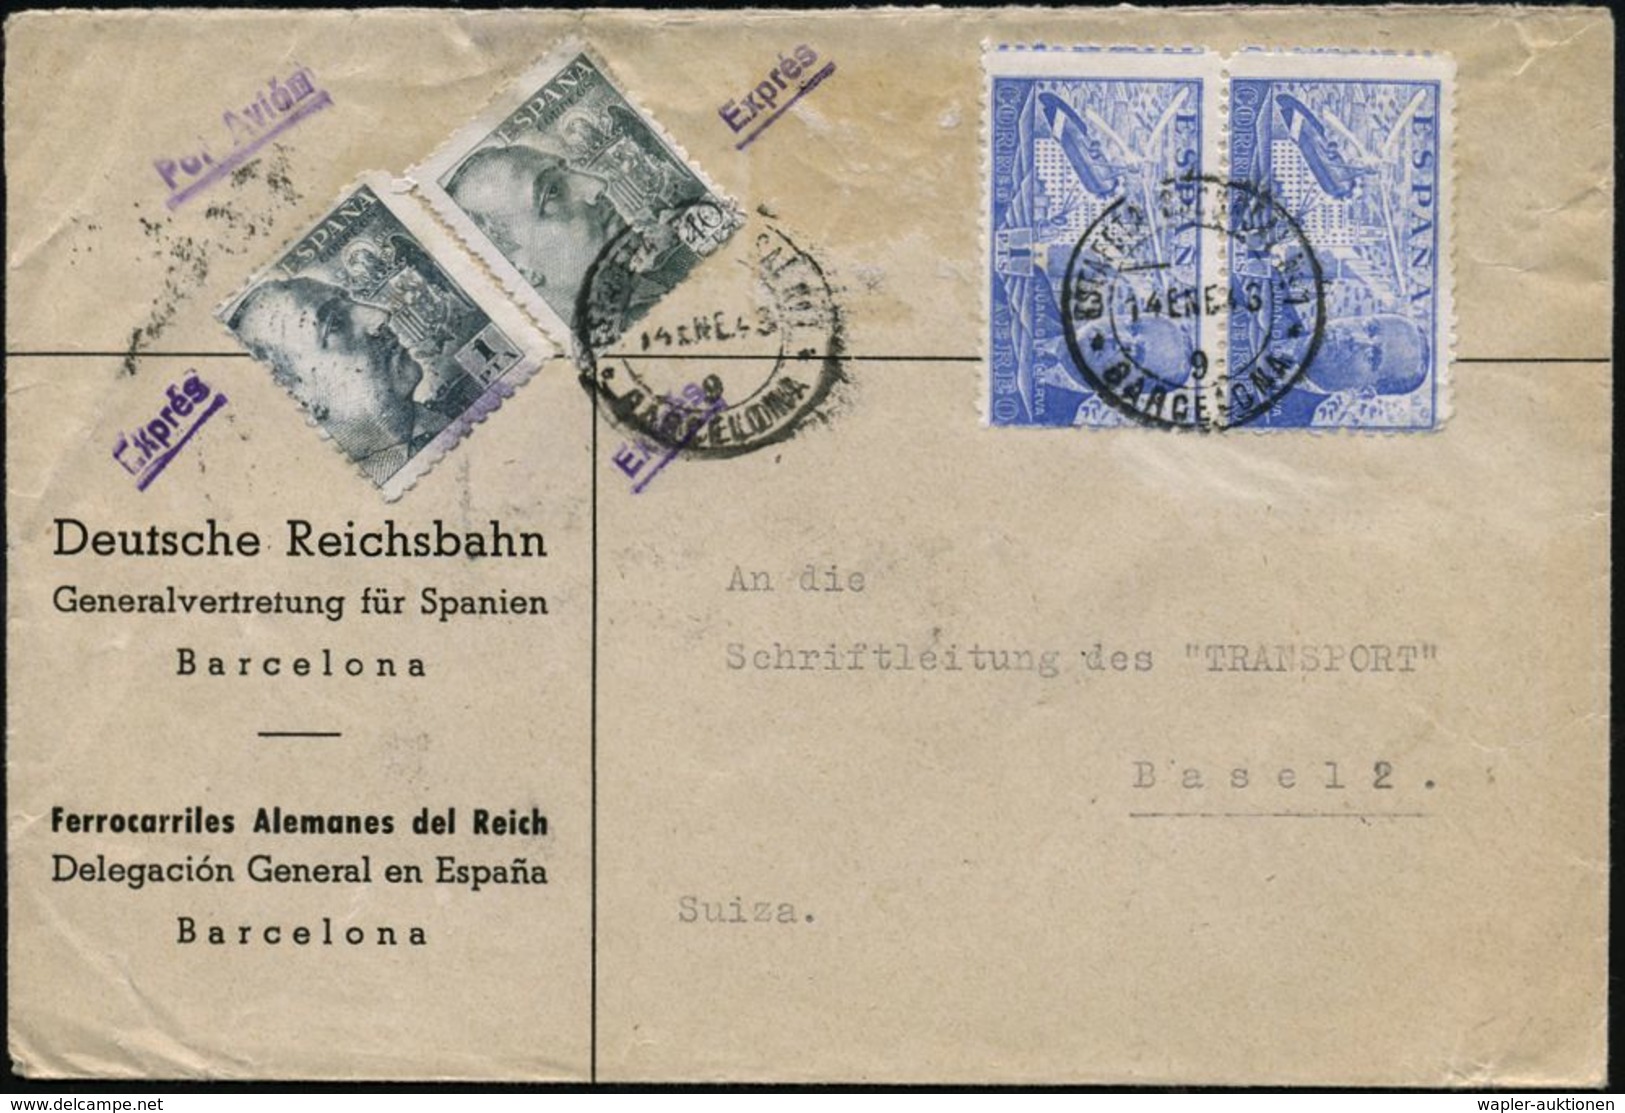 EISENBAHN-GESELLSCHAFTEN / REICHSBAHN / BUNDESBAHN : SPANIEN 1943 (14.1.) Dienst-Bf: Deutsche Reichsbahn/Generalvertretu - Eisenbahnen